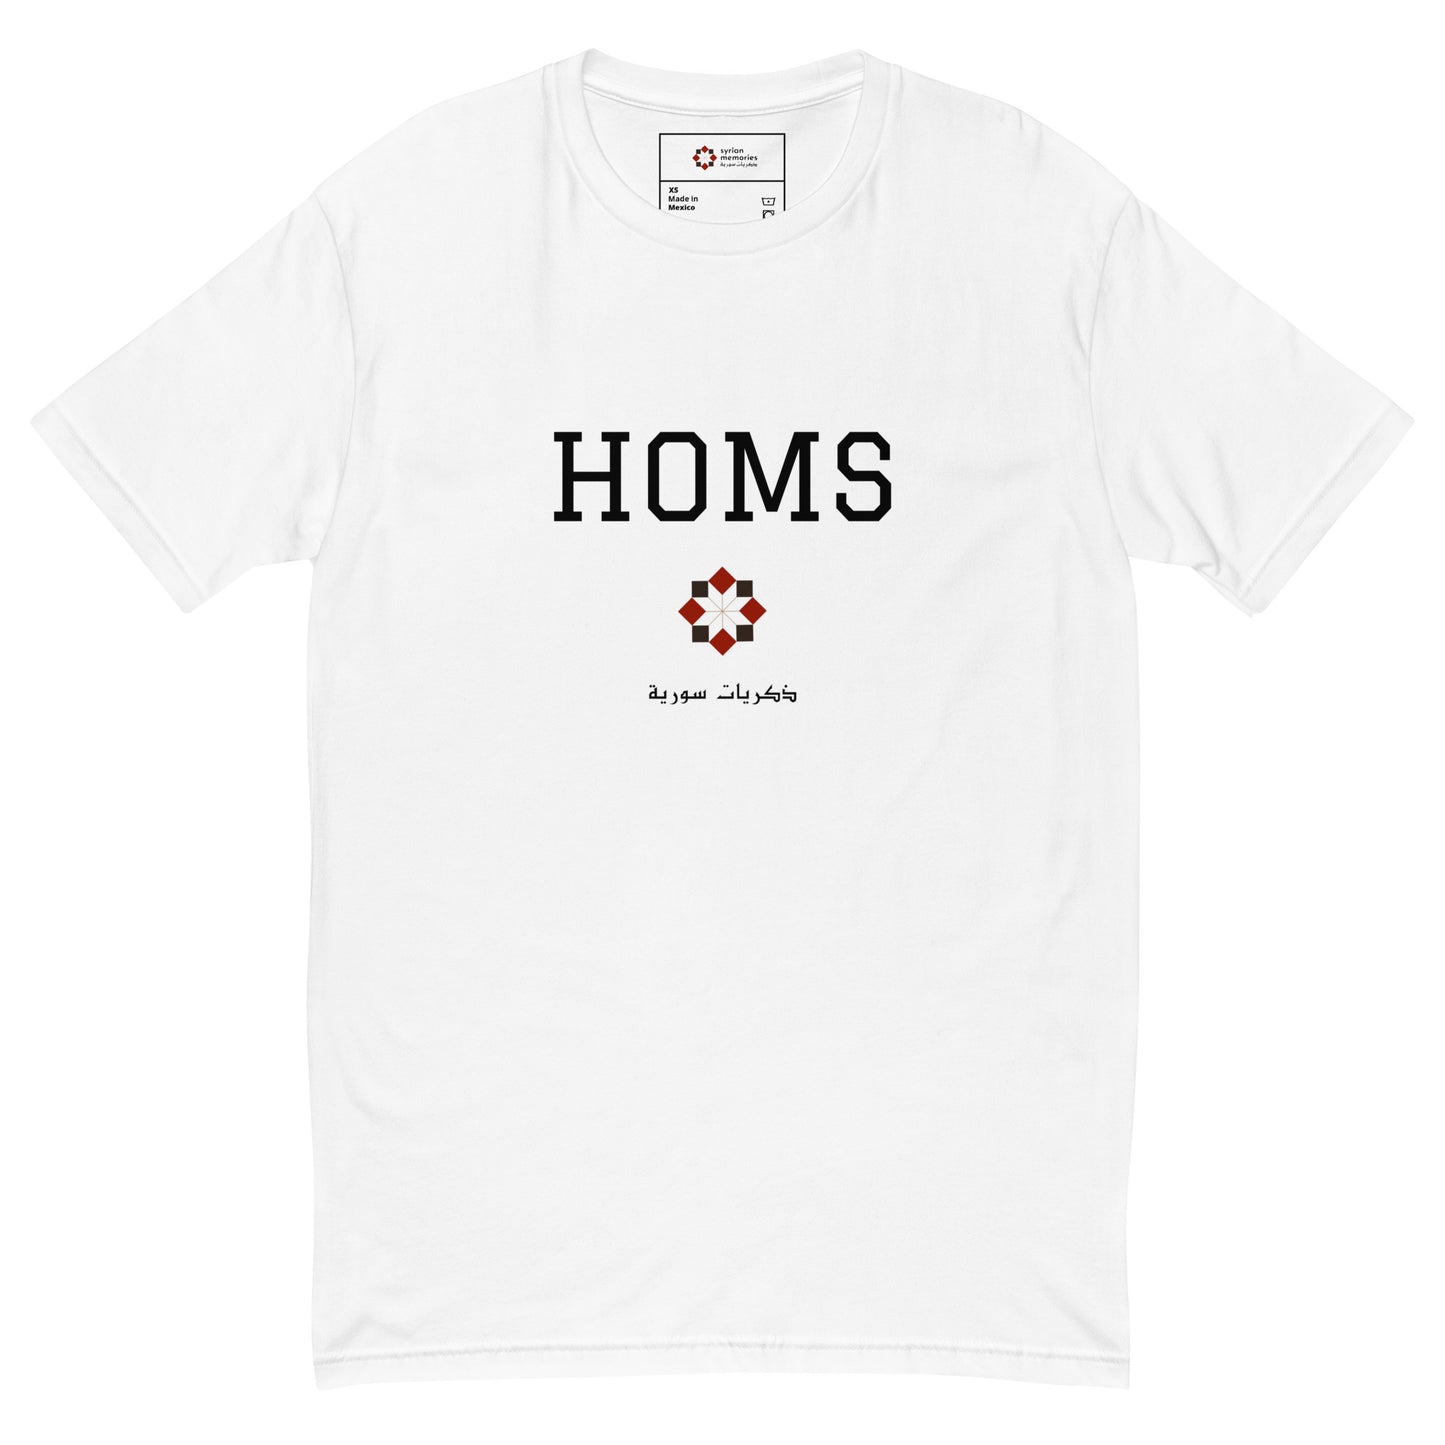 Homs - University Collection - Cotton T-shirt